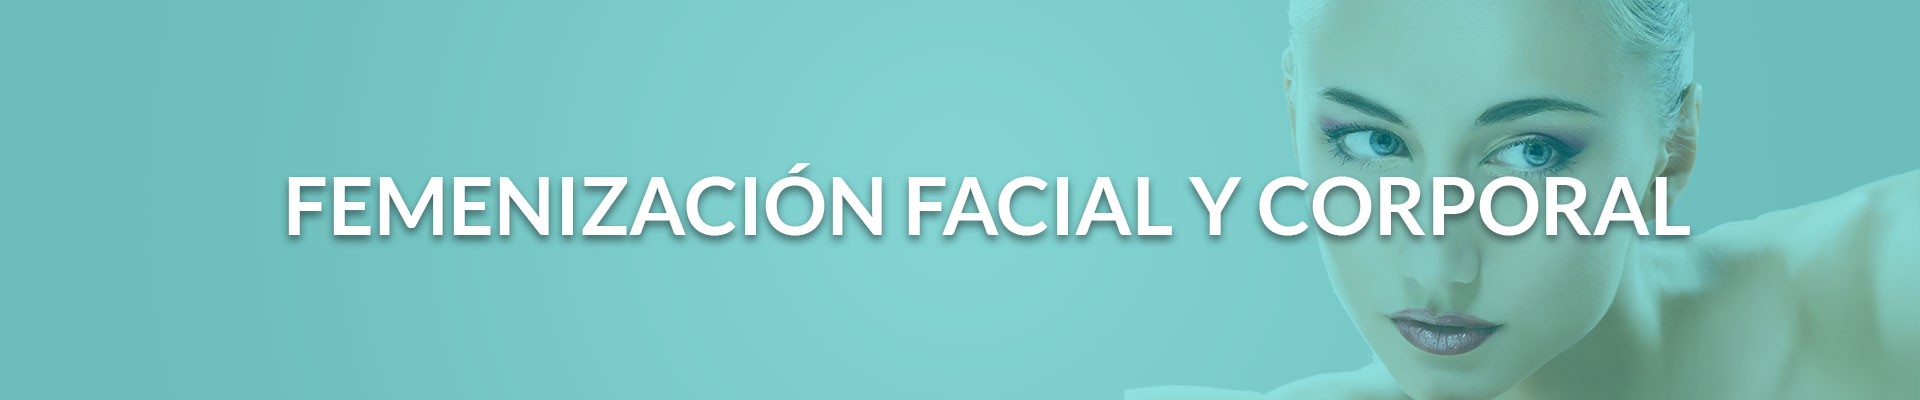 feminizacion facial y corporal